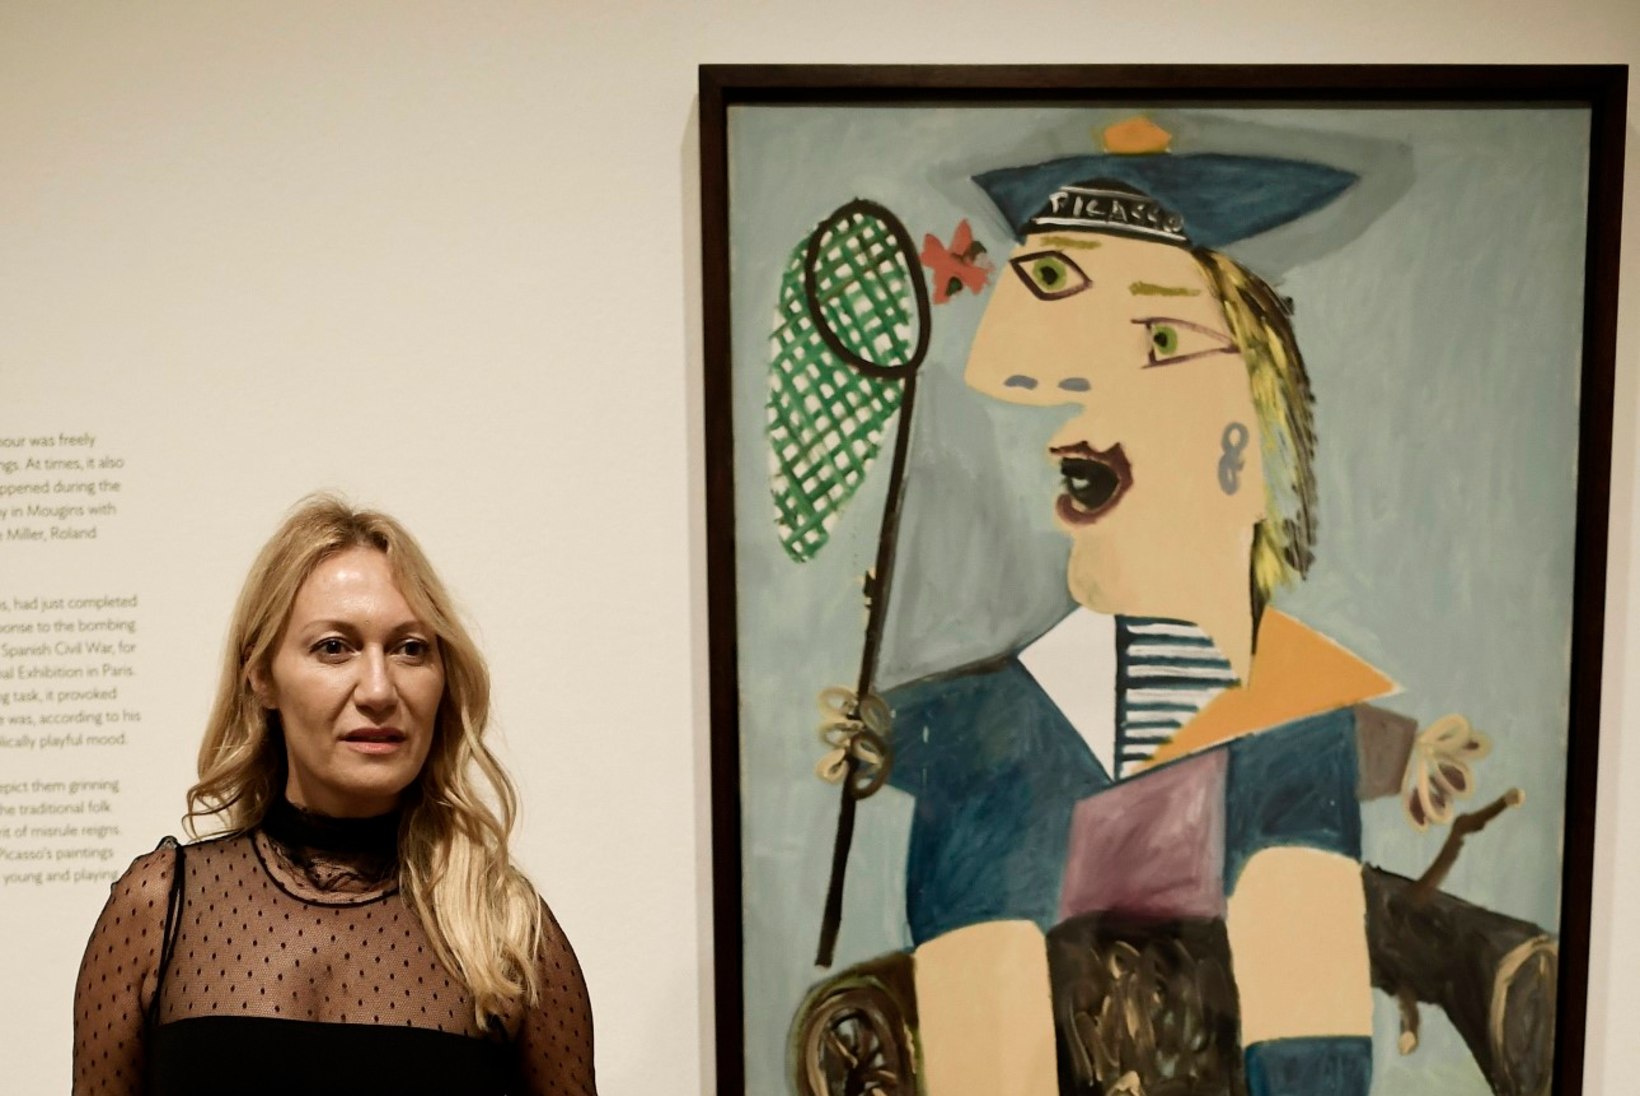 Saladus tuli ilmsiks: kuulus Picasso maalis tütre roojaga!